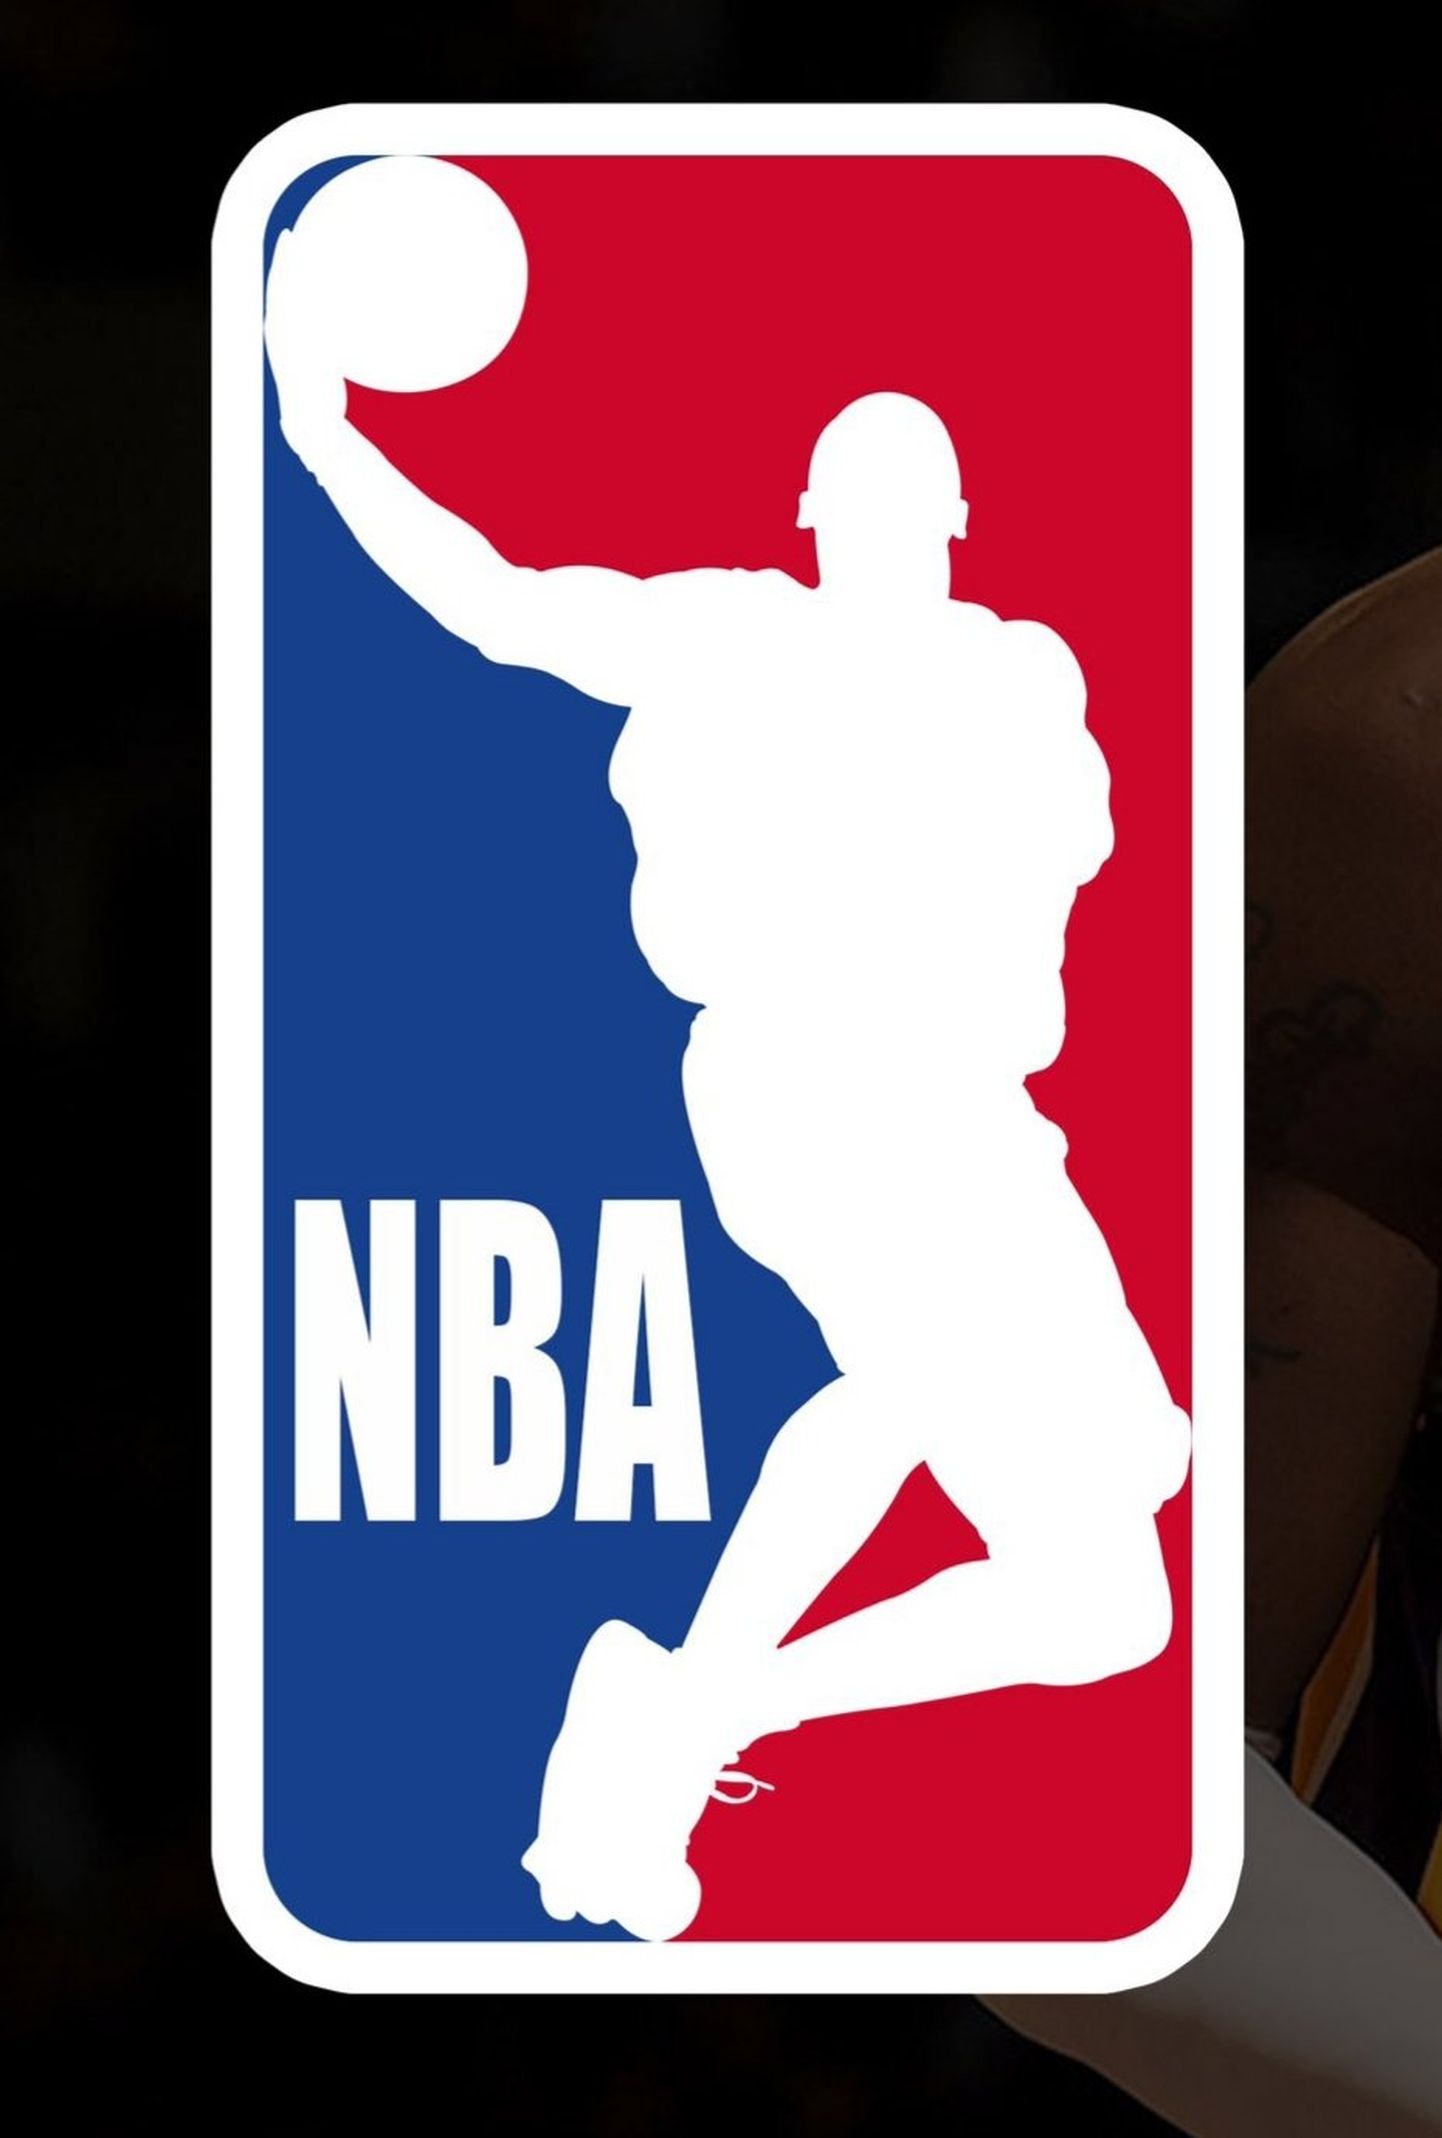 Ühe fänni nägemus NBA uuest võimalikust logost.